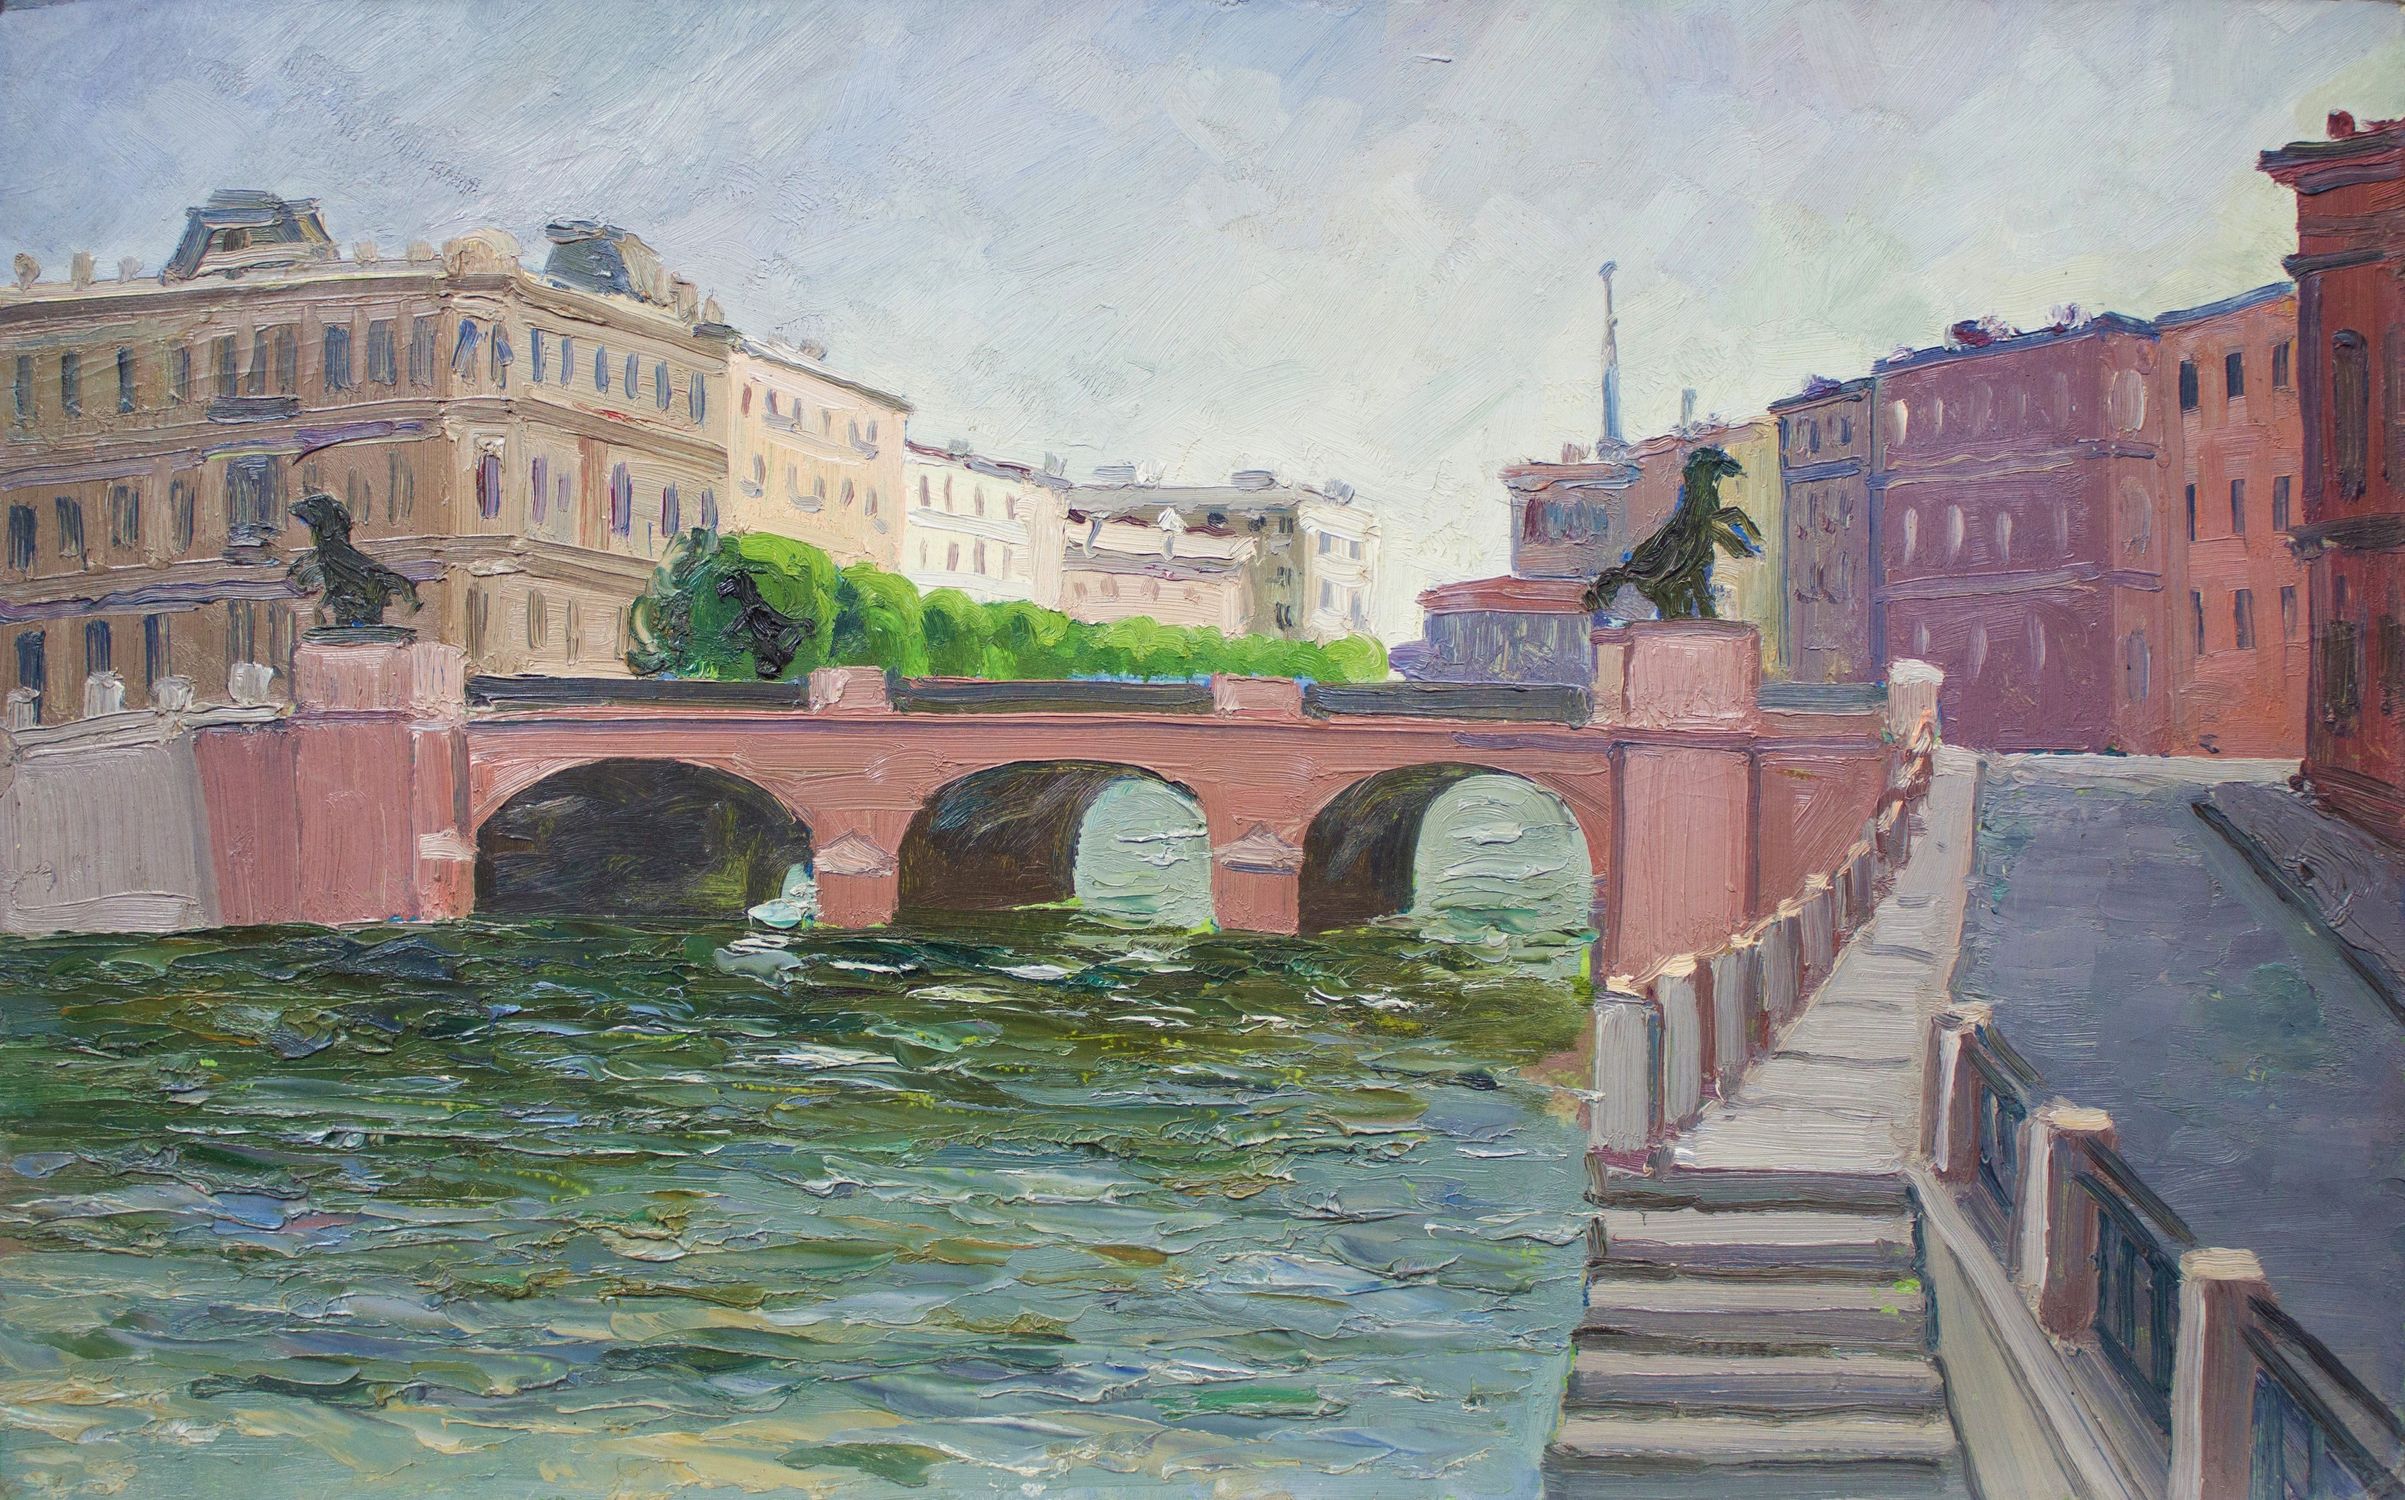 "Anichkov bridge"